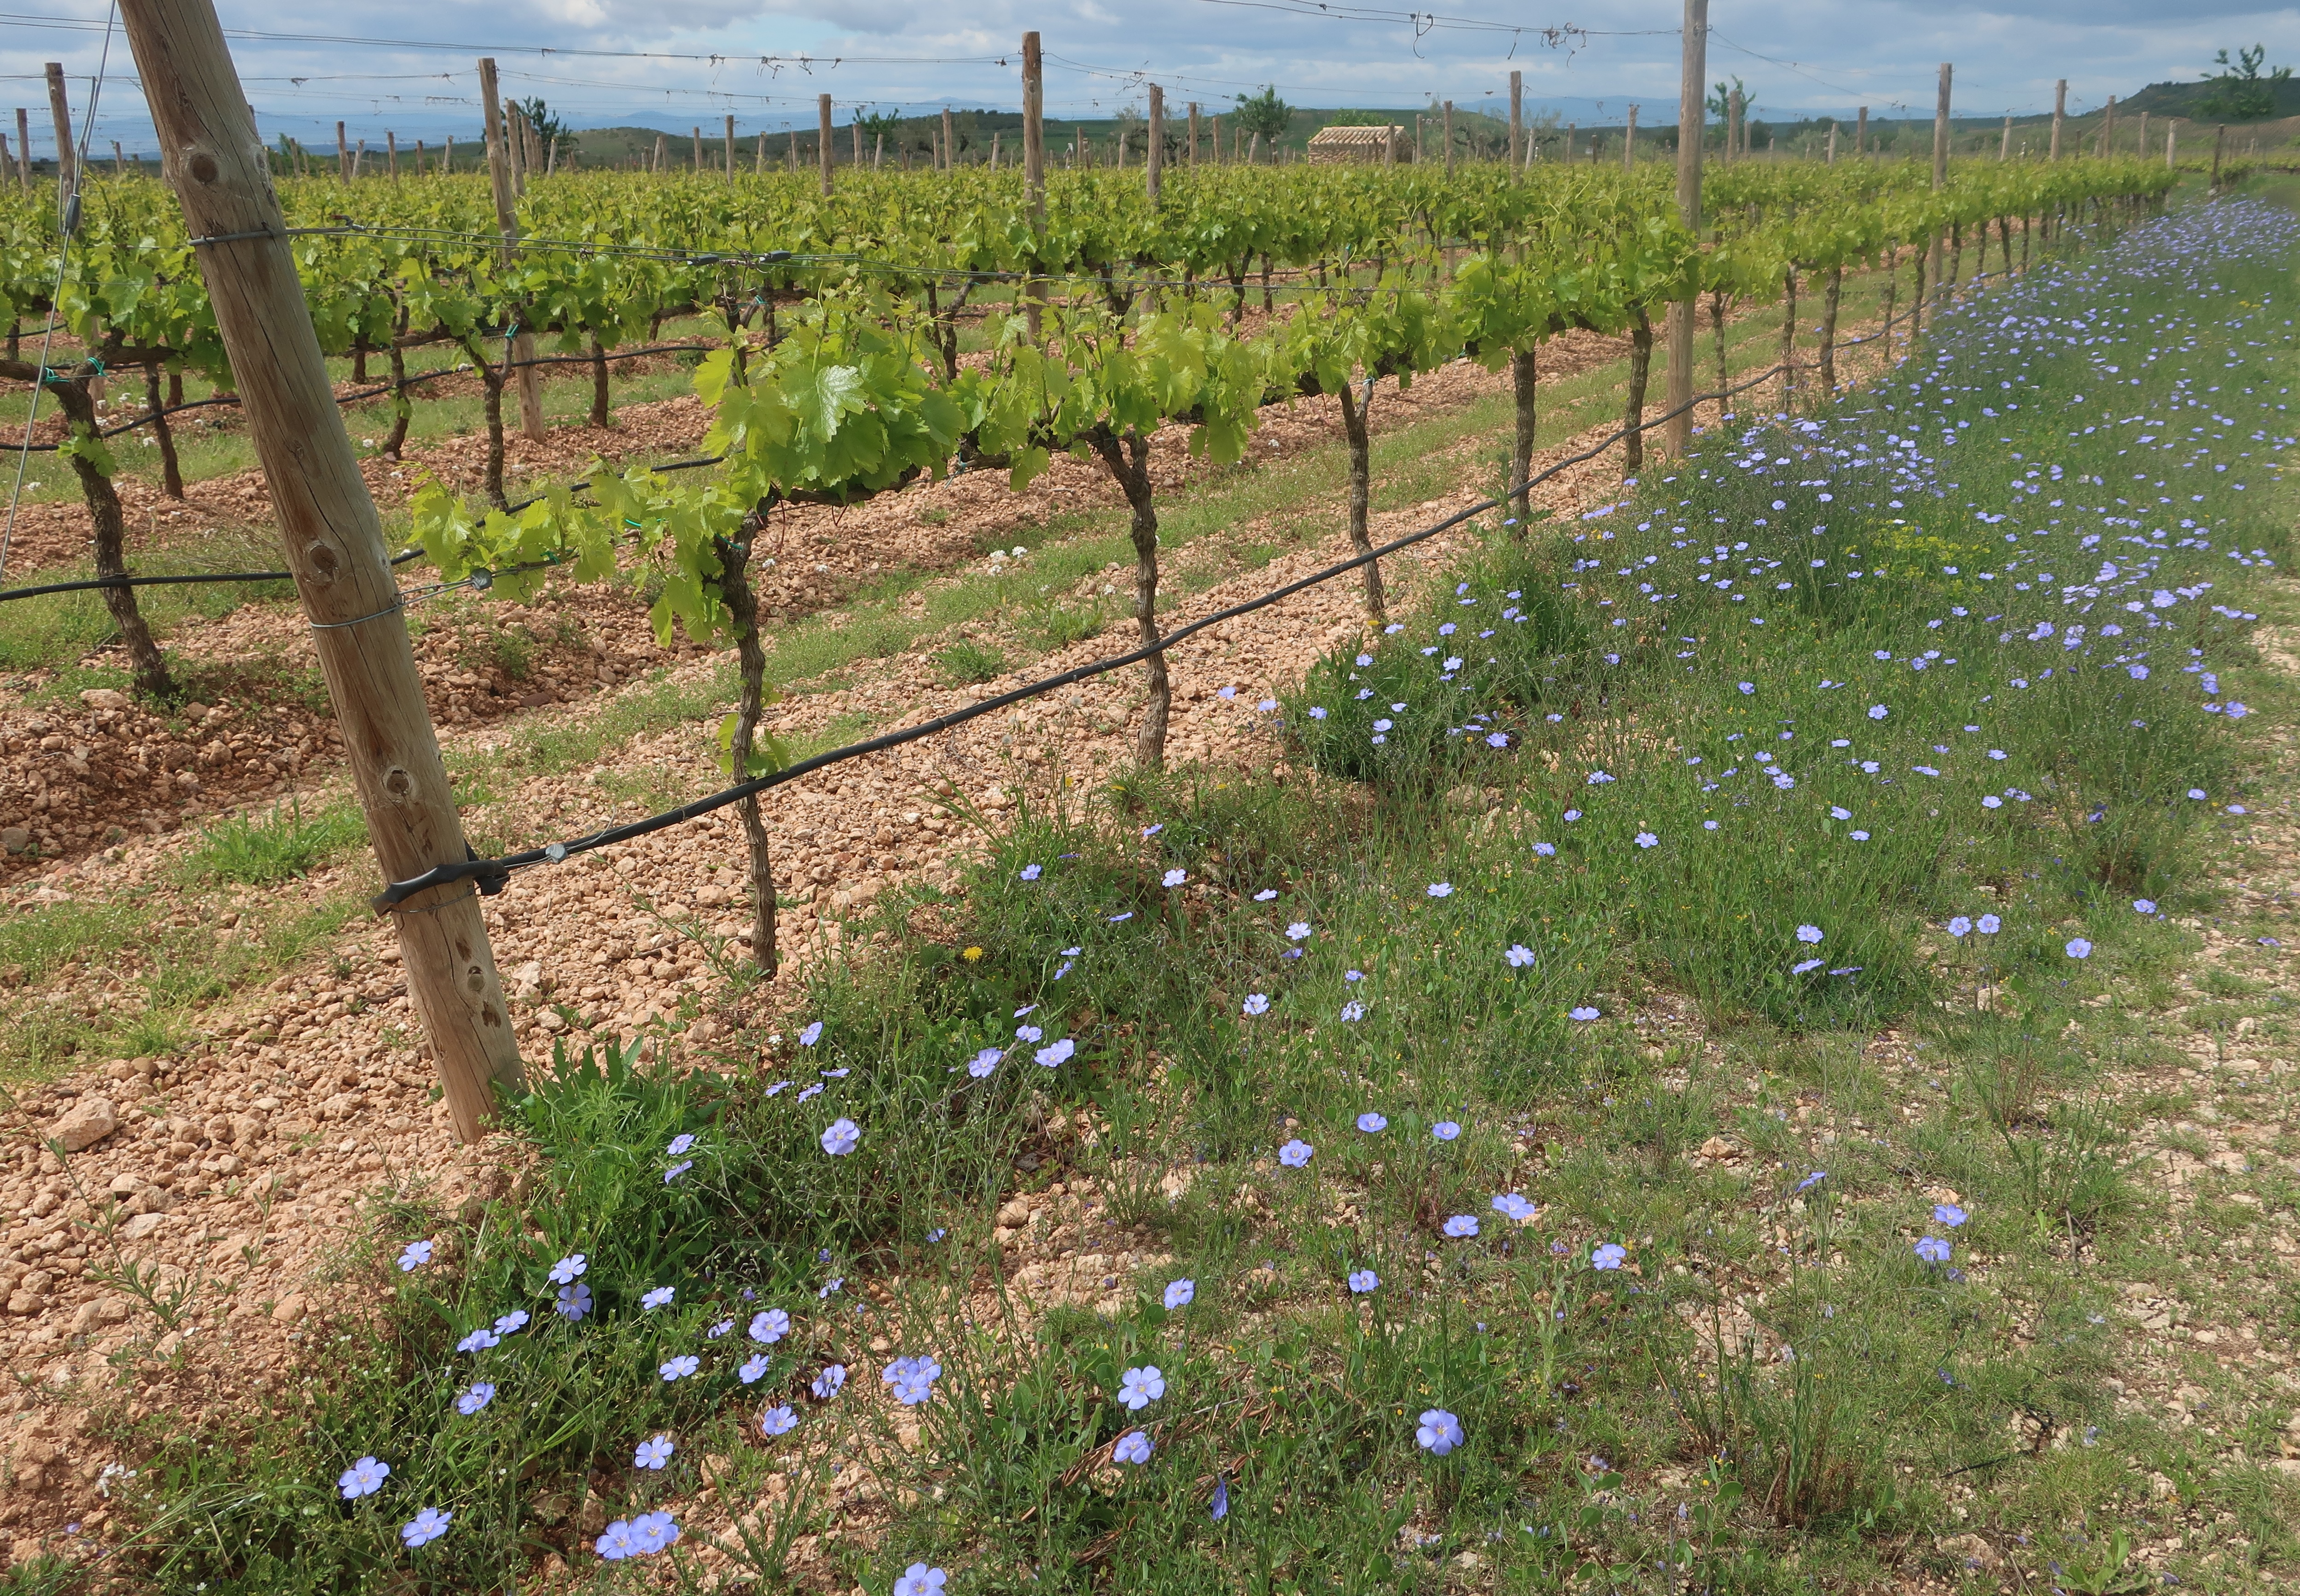  Navarra experimenta con variedades de uva de maduración más prolongada para adaptar la viticultura al cambio climático